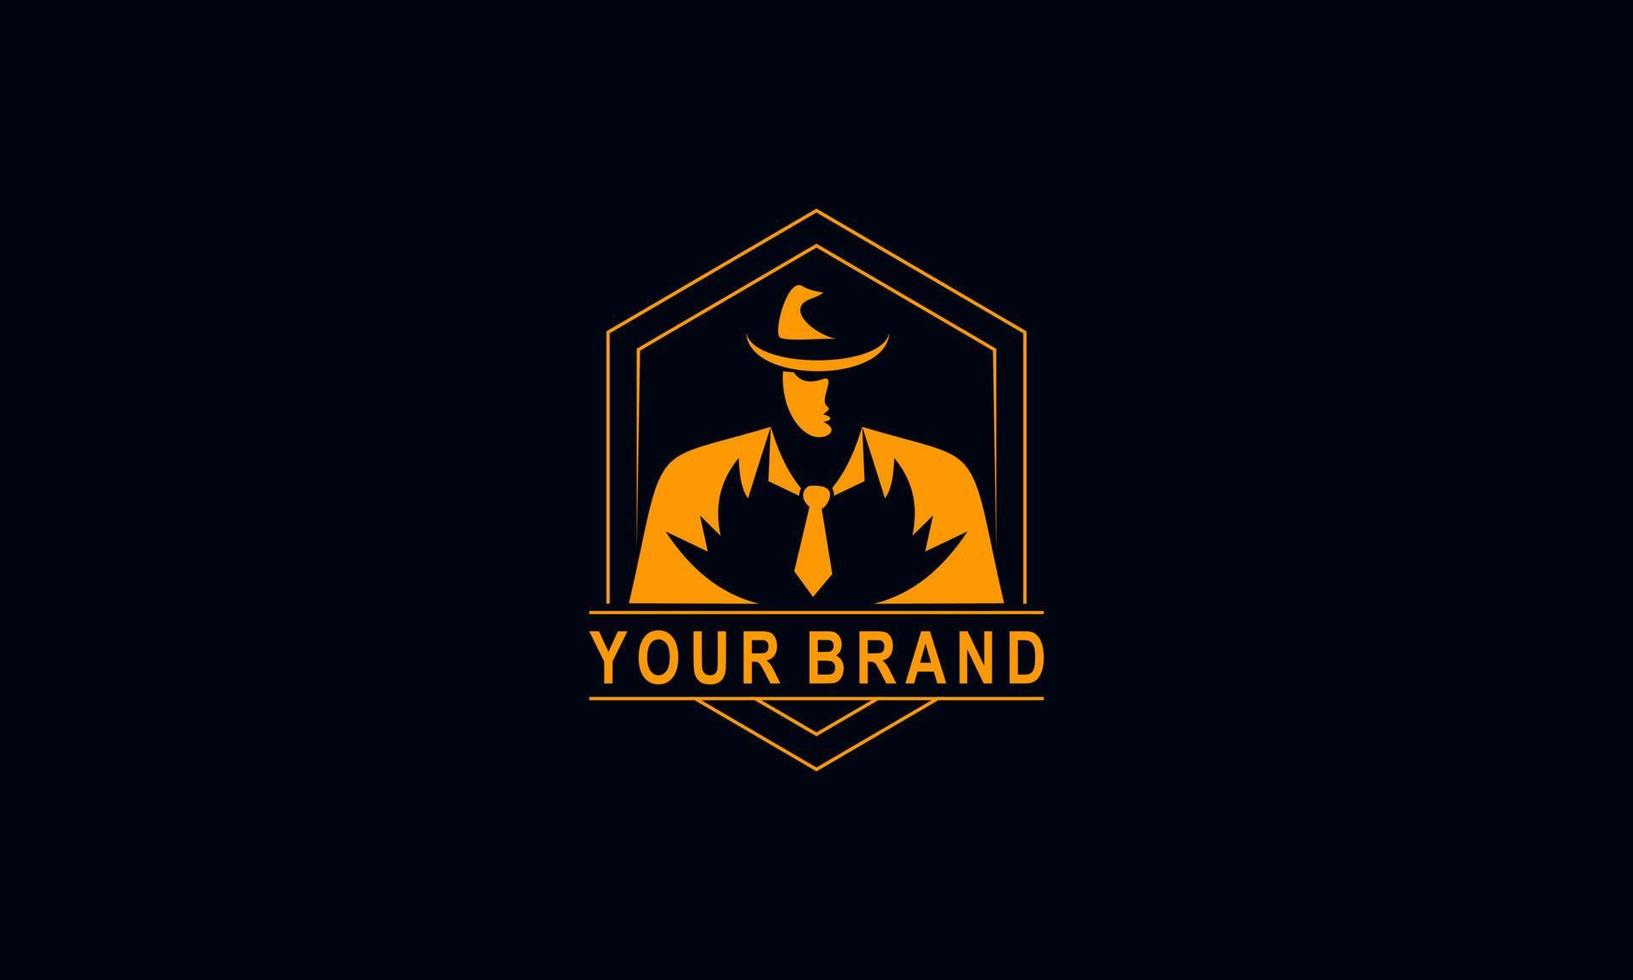 emblèmes du logo de la mafia avec la tête d'hommes de silhouette abstraite de caractère au chapeau. illustration vectorielle vintage vecteur